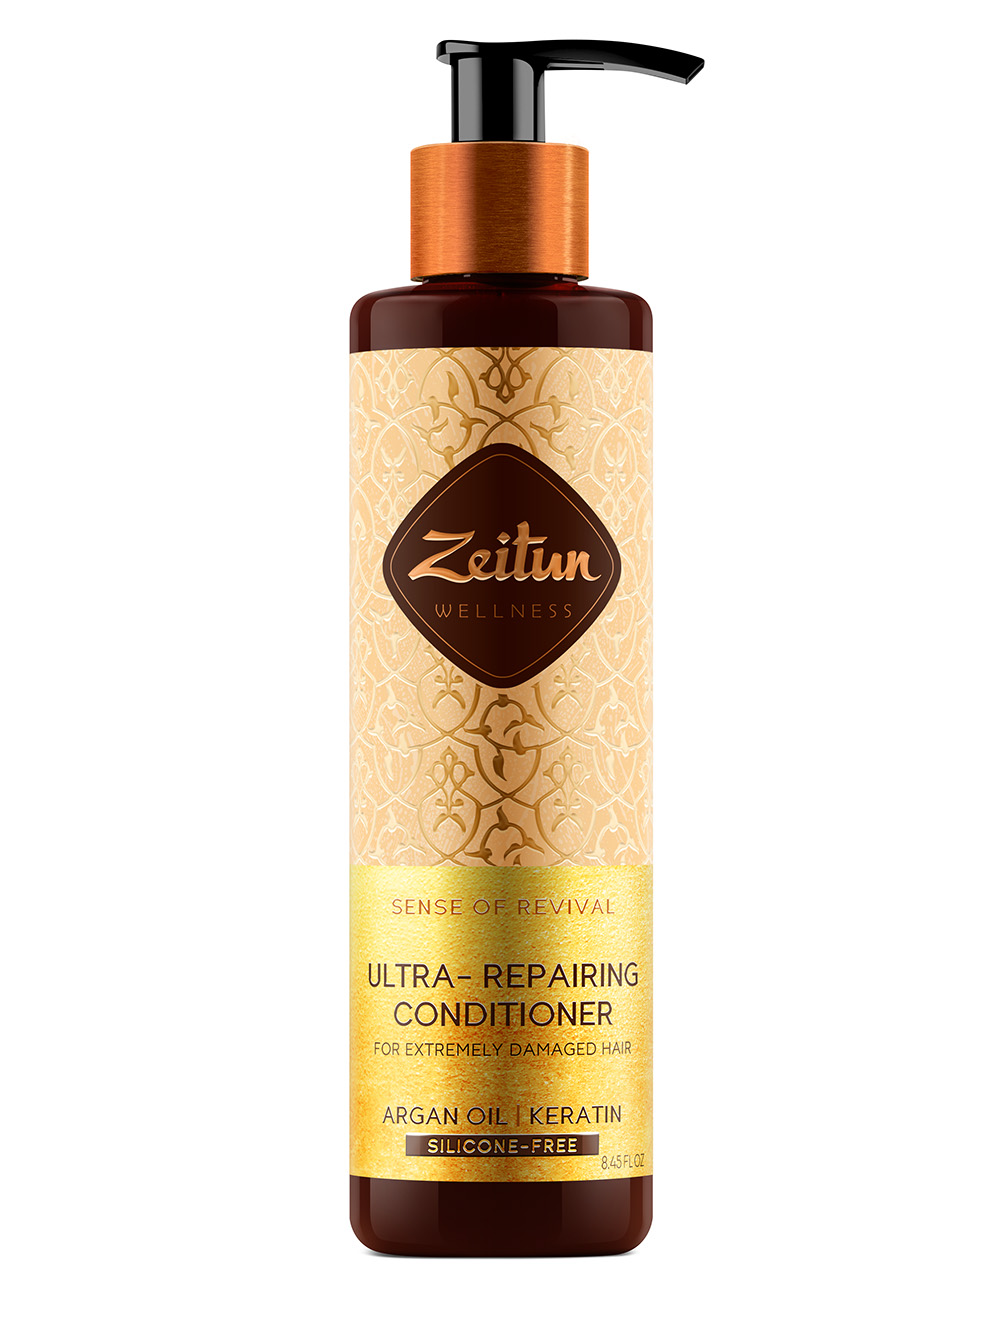 Zeitun Бальзам-кондиционер для поврежденных волос Ритуал восстановления, 250 мл (Zeitun, Wellness) бальзам кондиционер для поврежденных волос ритуал восстановления wellness ultra repairing conditioner 250мл